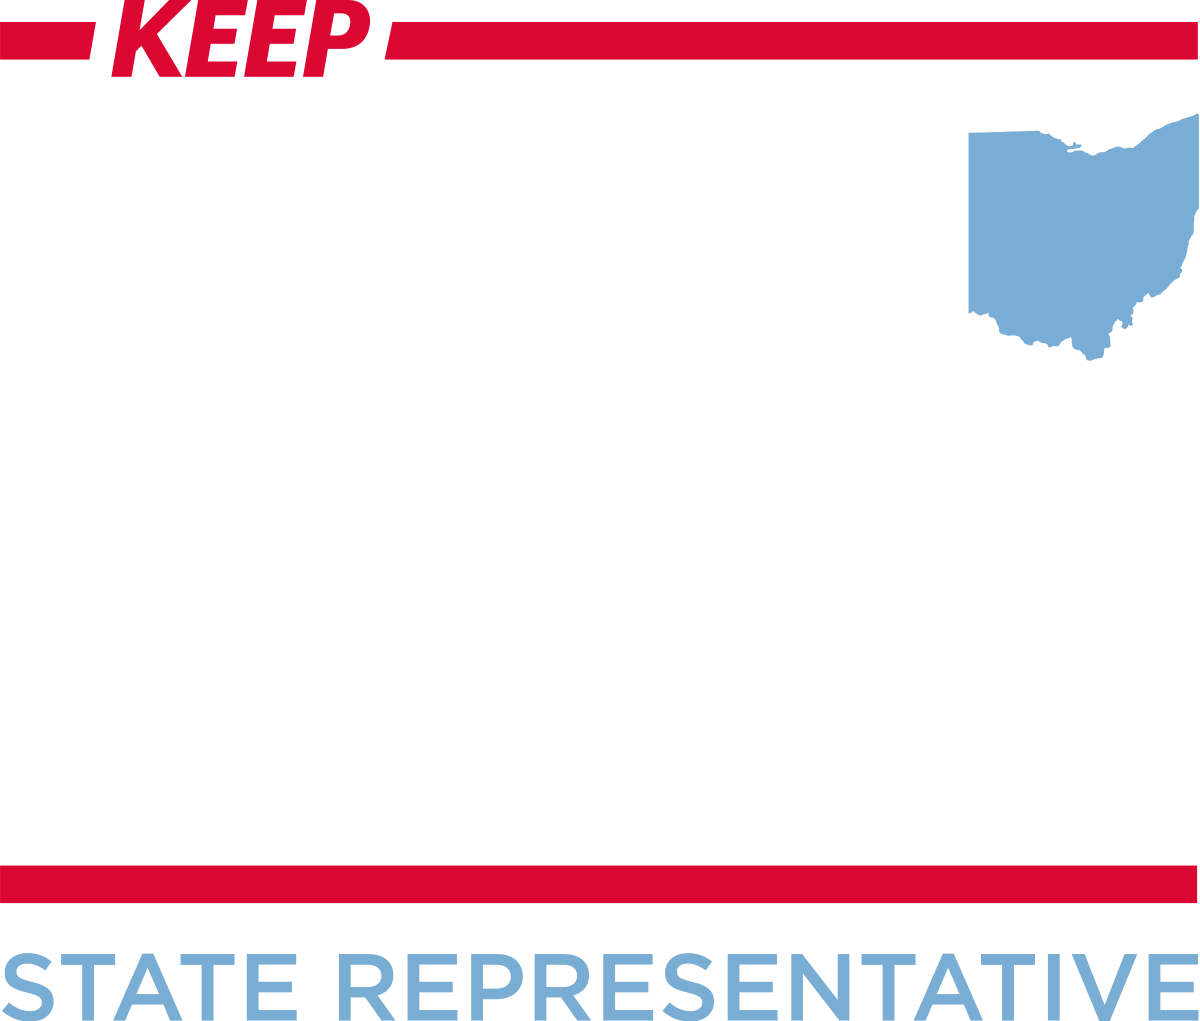 Beryl Brown Piccolantonio for State Representative